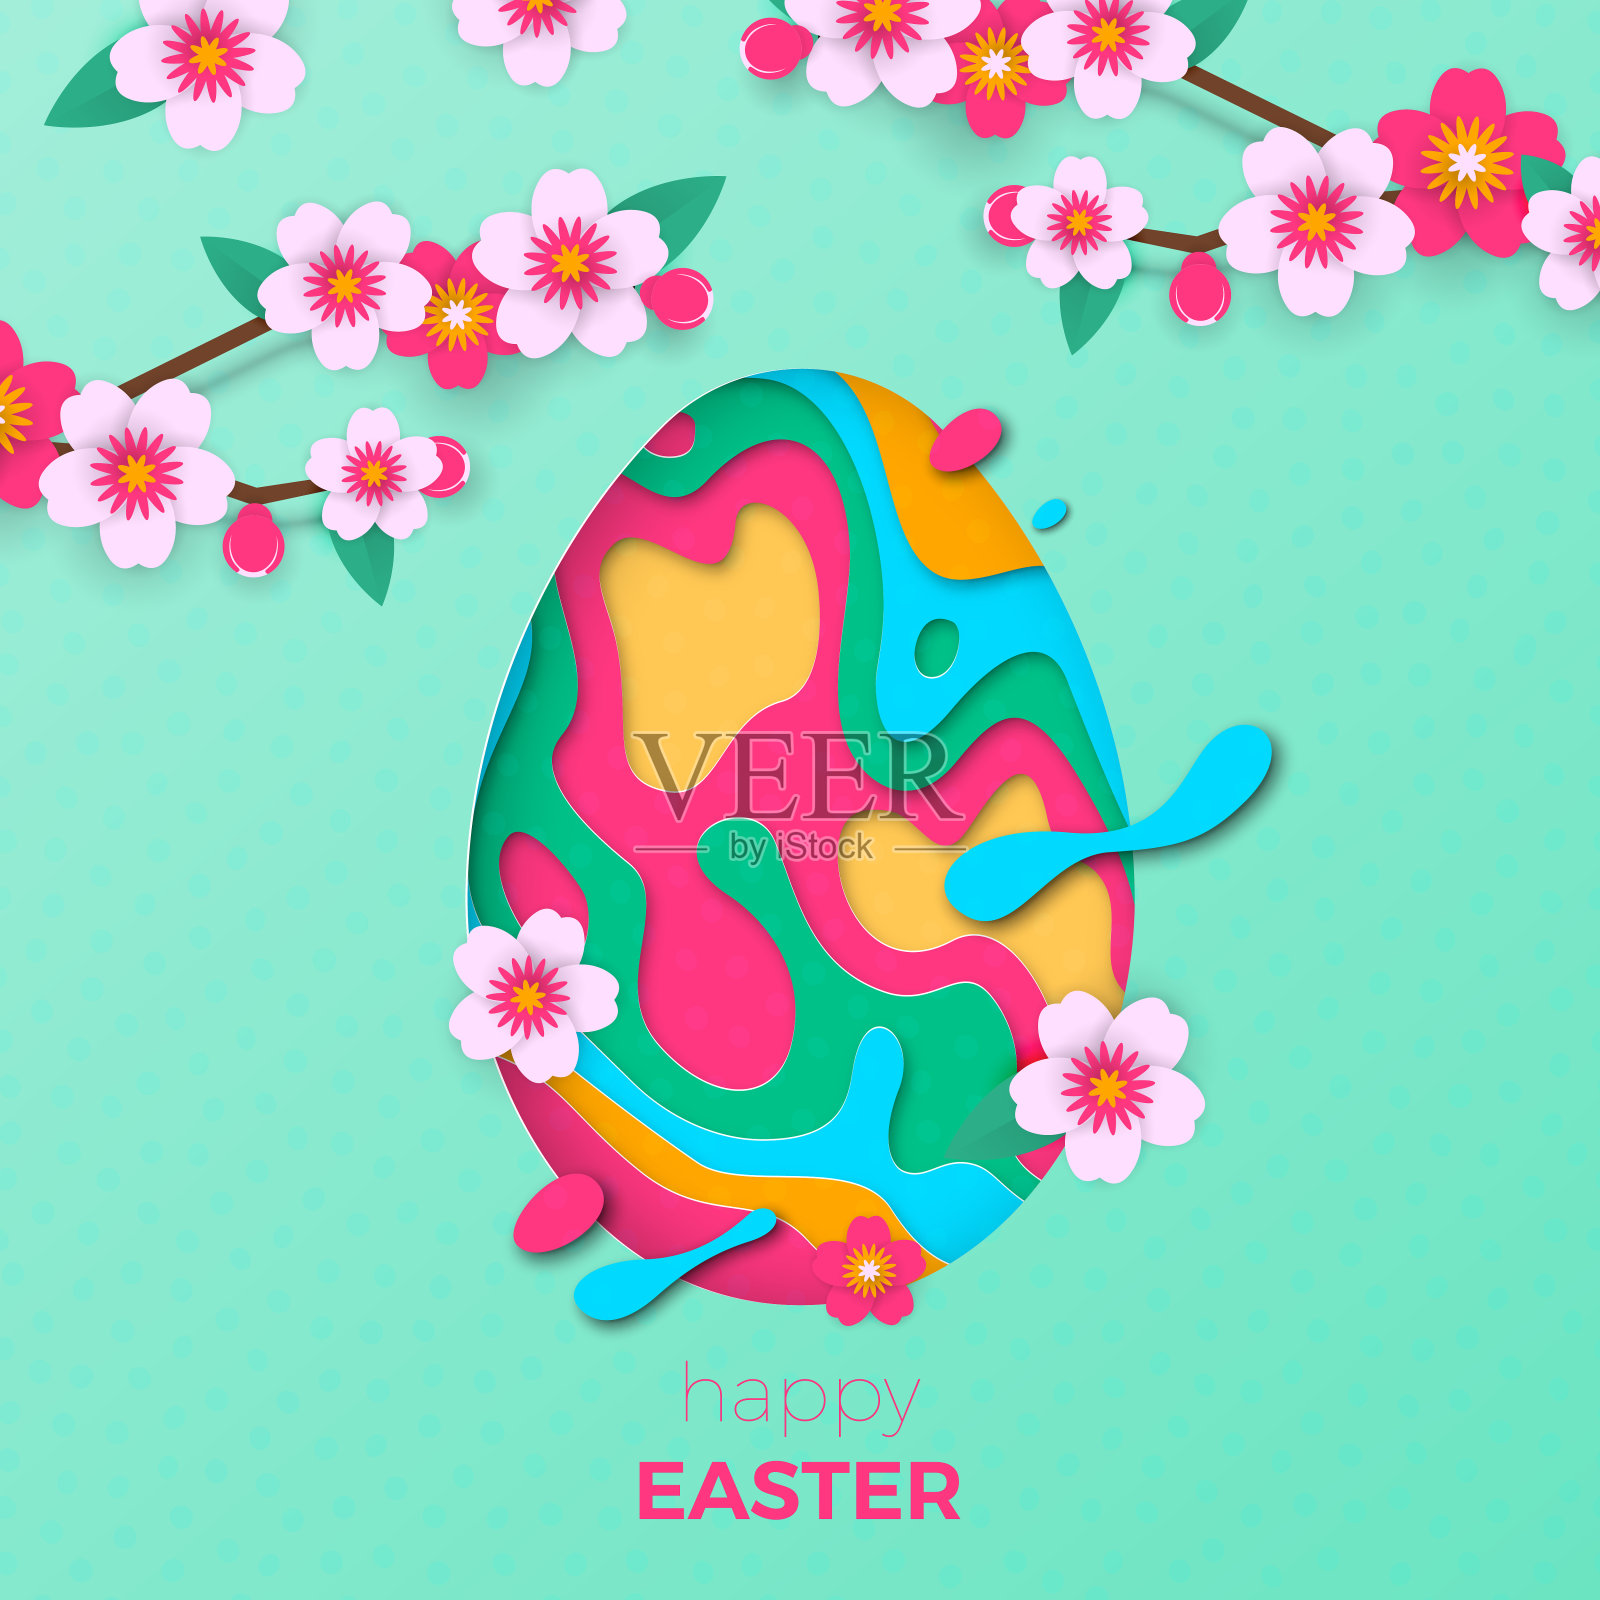 复活节贺卡的彩蛋剪纸和春天的鲜花背景复活节狩猎节日剪纸设计设计模板素材